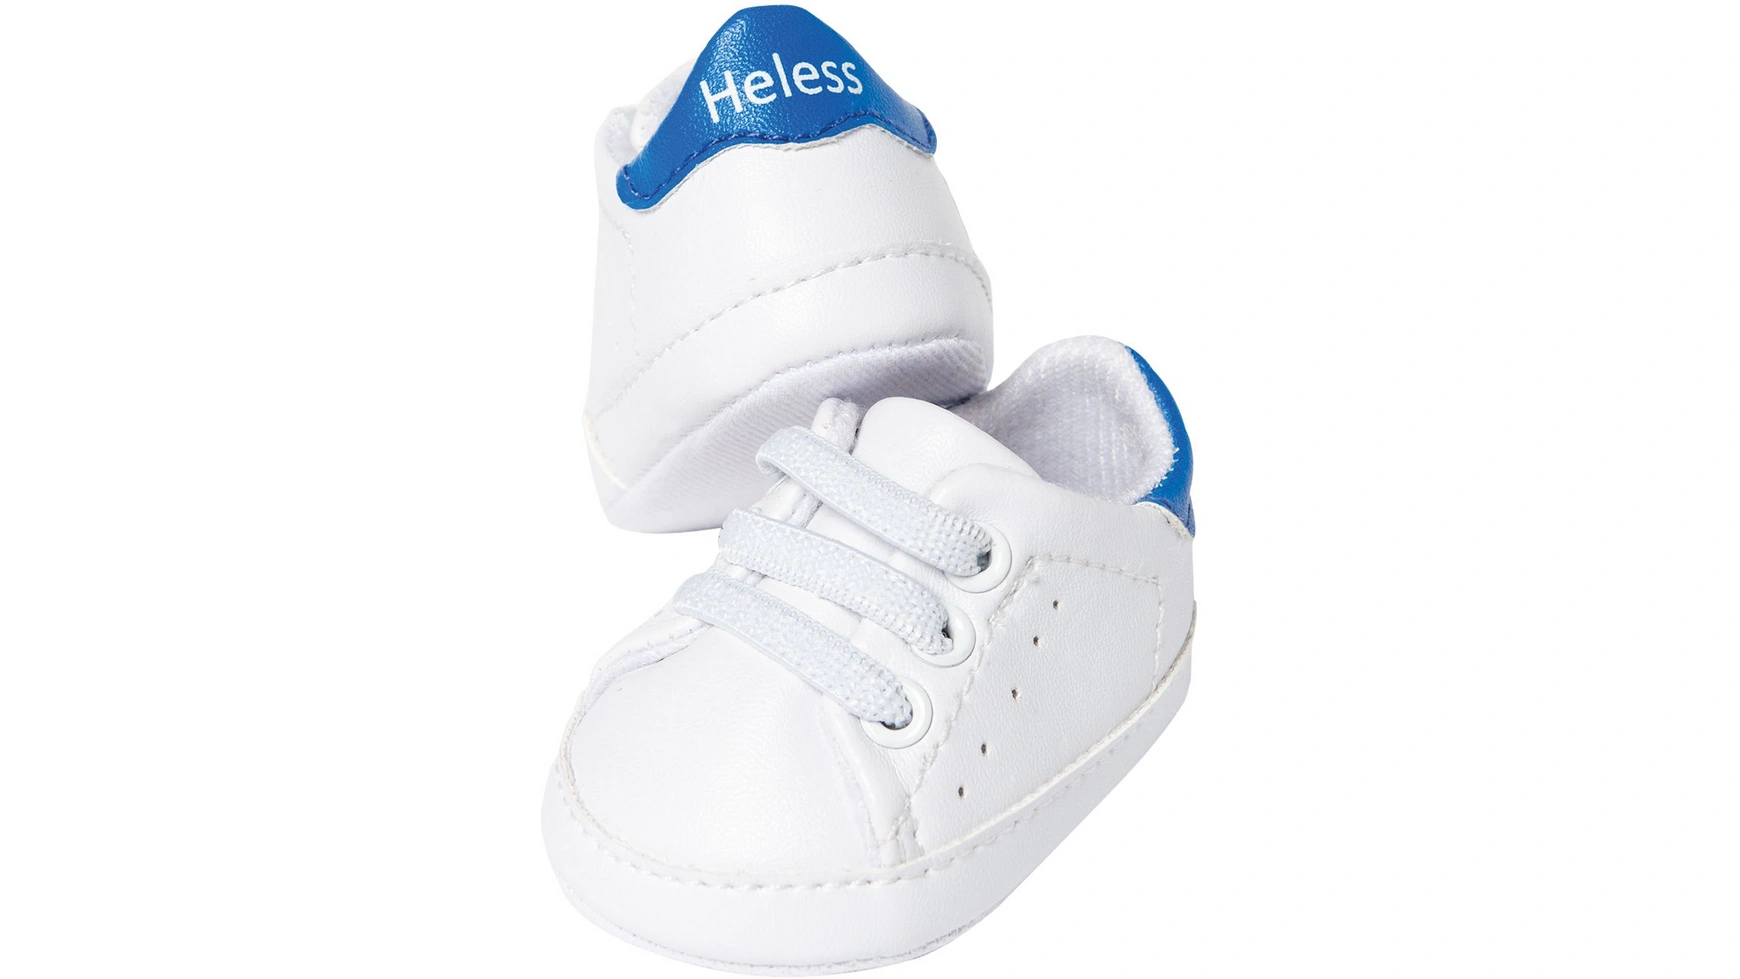 Белые кукольные кроссовки, размер 30-34см Heless